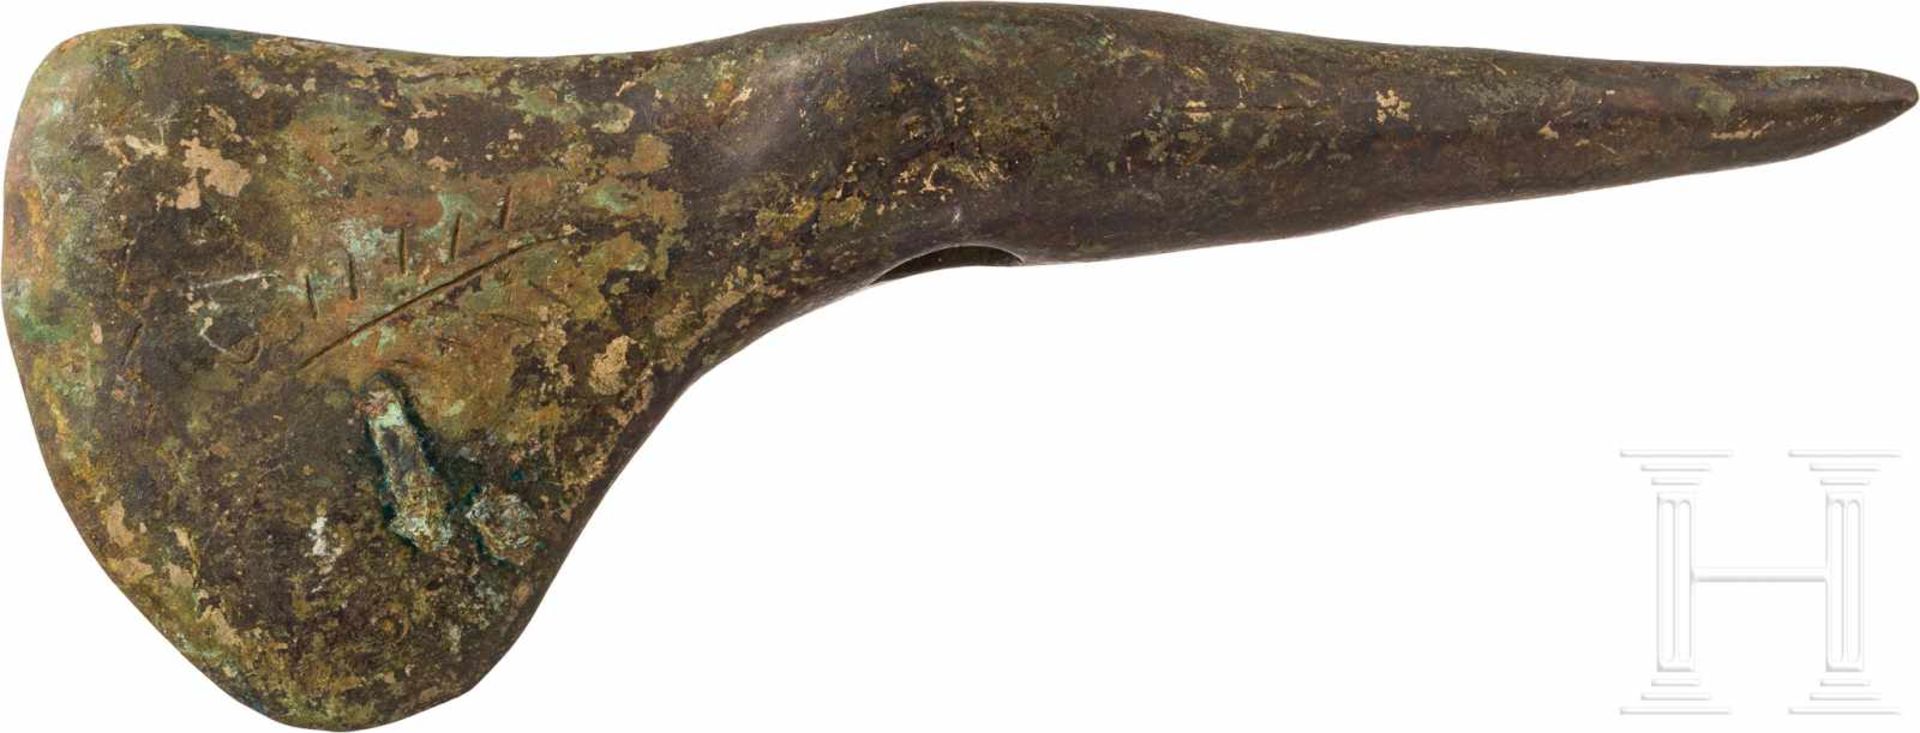 Bronzeaxt, frühe Bronzezeit, 1. Hälfte 2. Jtsd. v. Chr.Massive Bronzeaxt, Axt und dornförmige Spitze